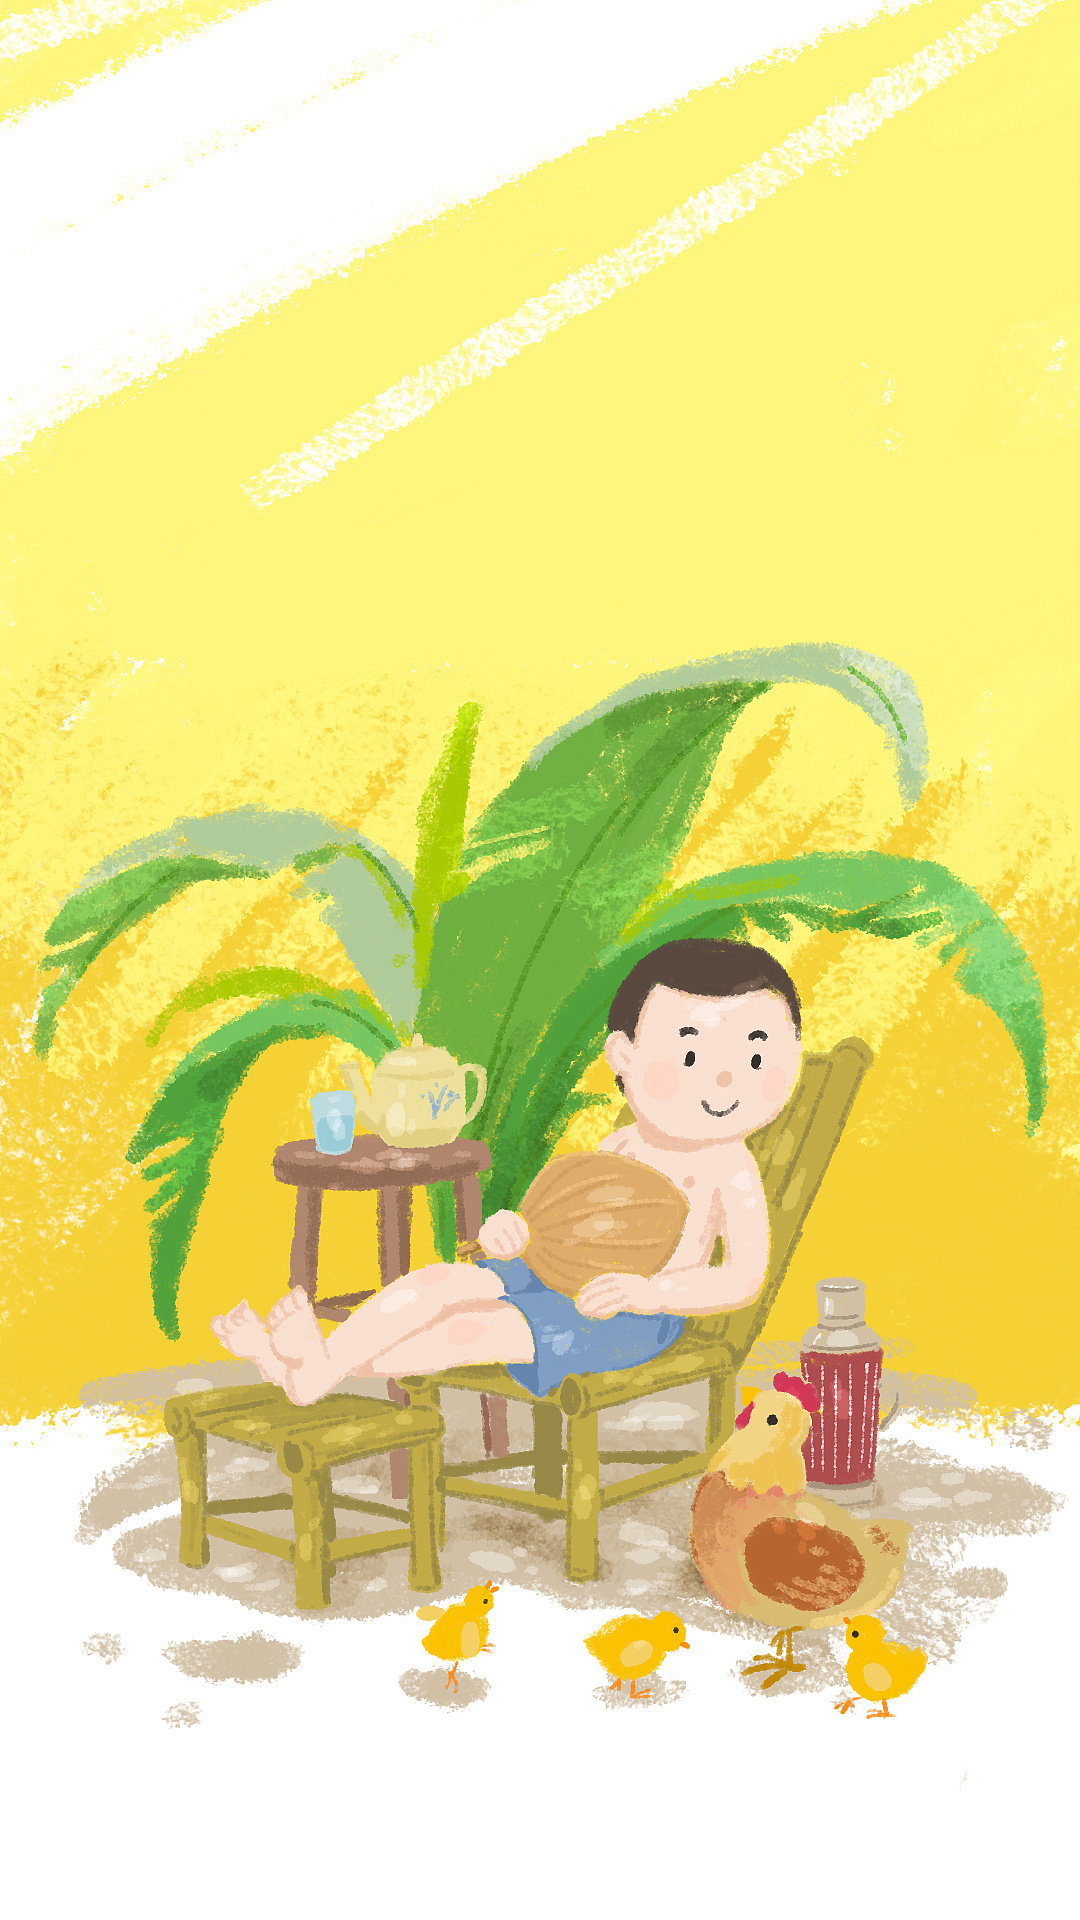 小时候暑假的时候,午后坐在自家花园里喝着凉茶扇着扇子乘凉的景象